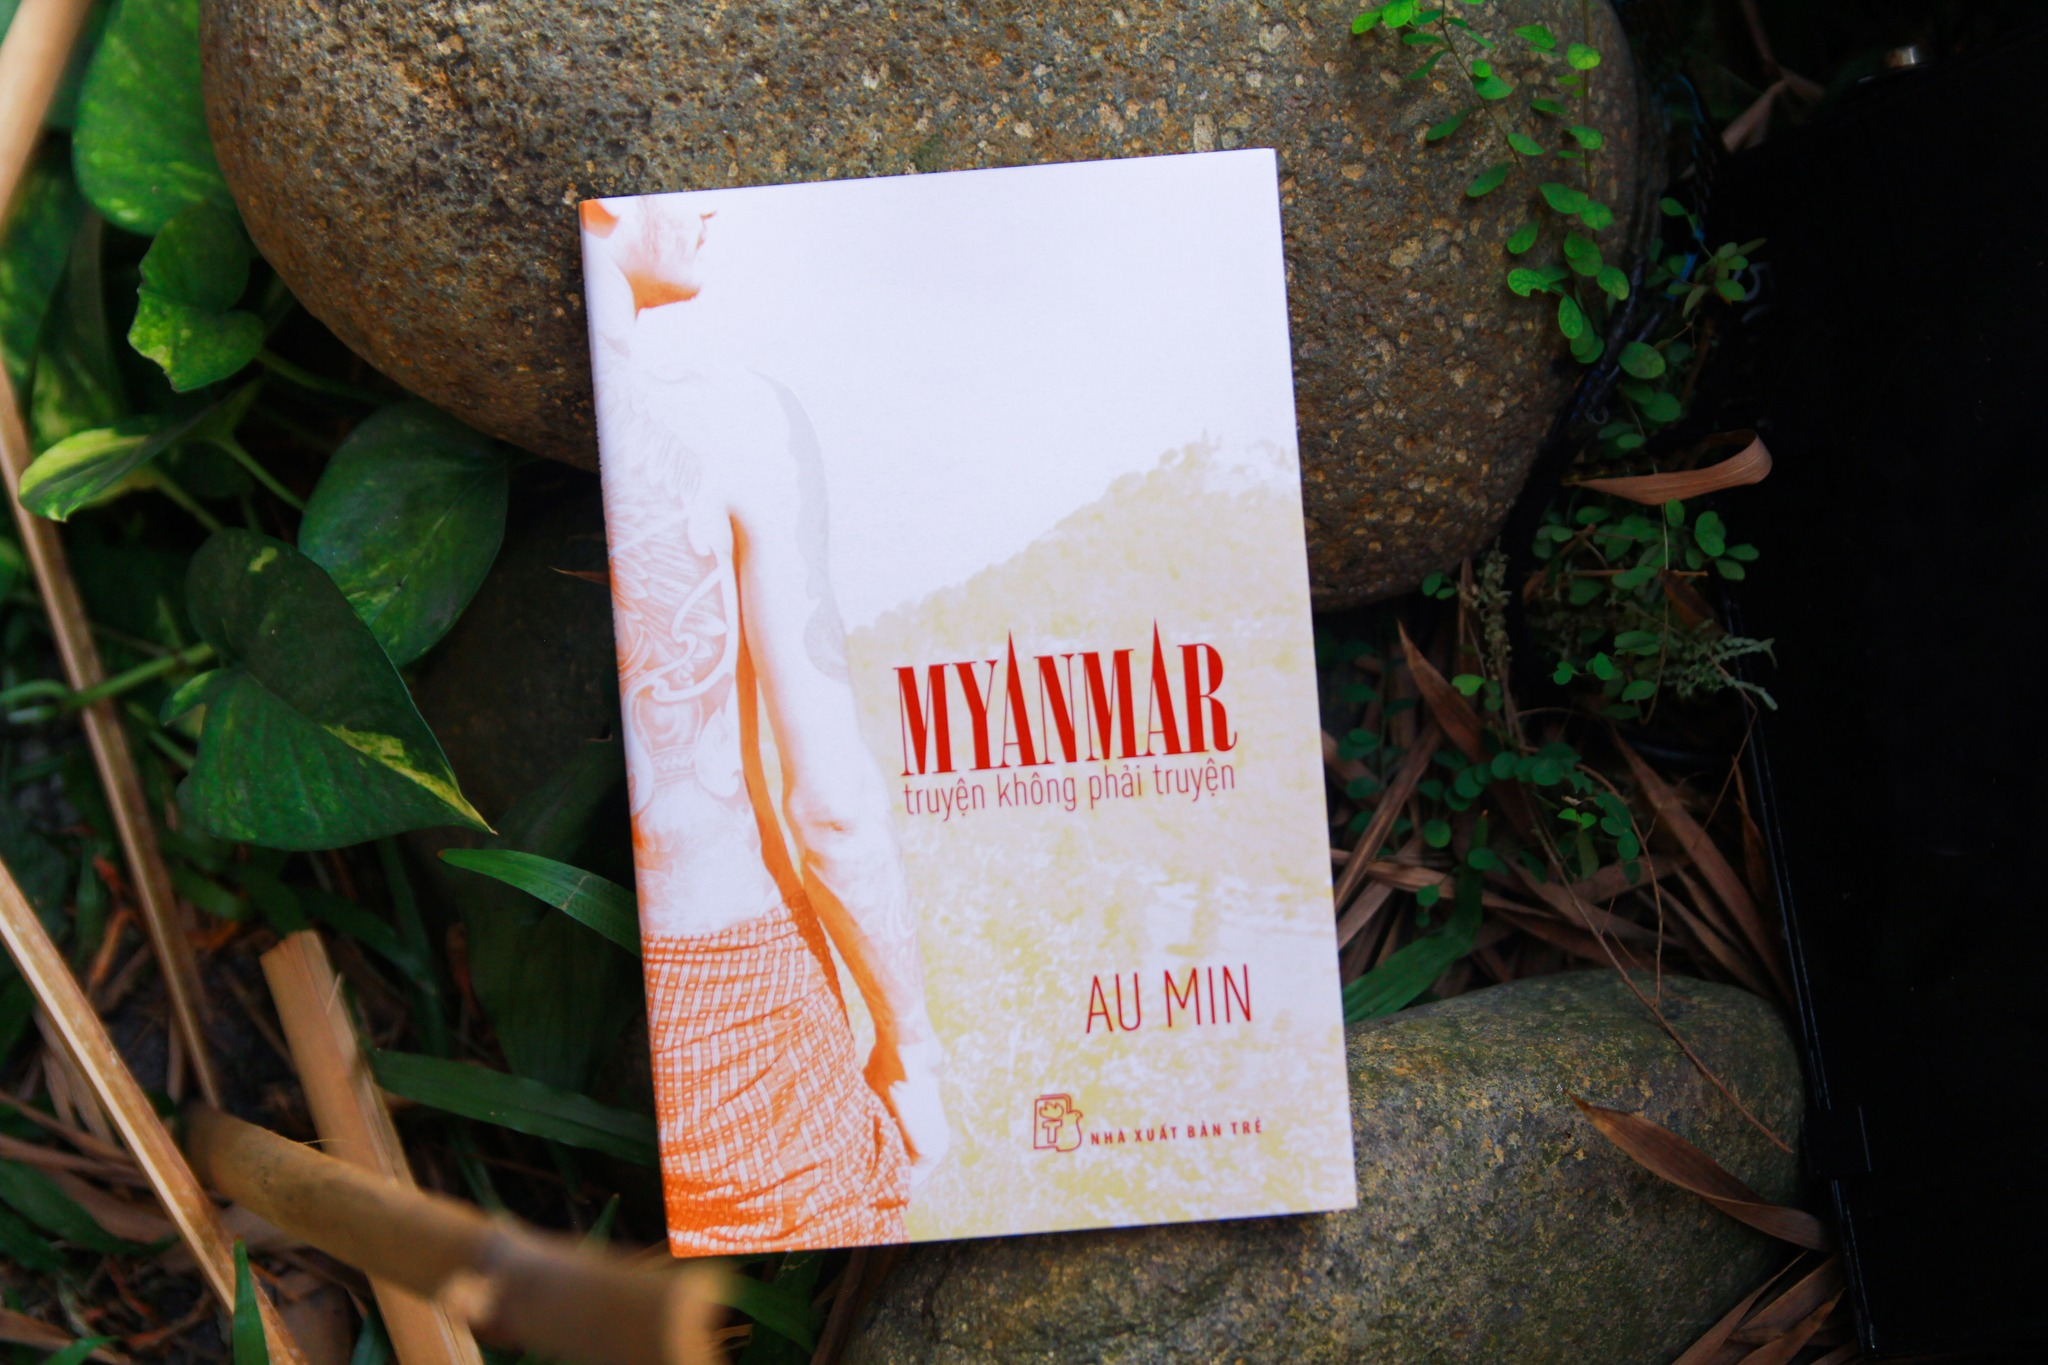 MYANMAR TRUYỆN KHÔNG PHẢI TRUYỆN - Au Min - (bìa mềm)